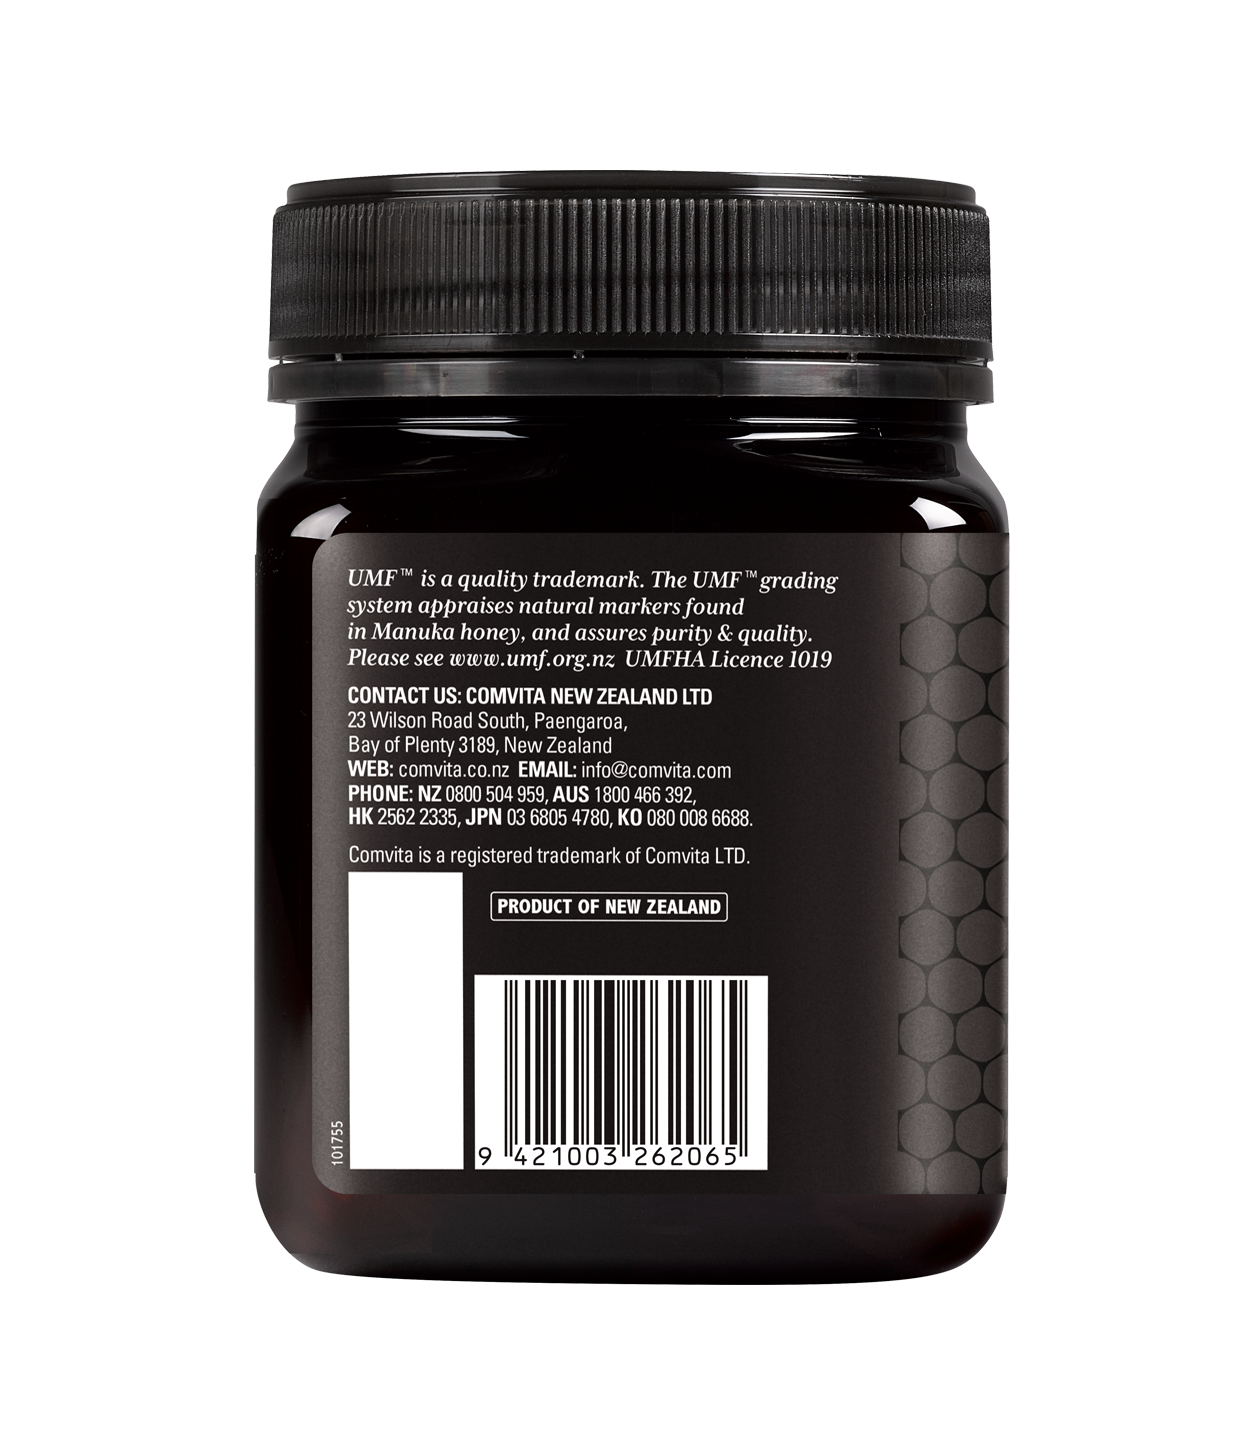 UMF™ 10+ Manuka Honey 1kg jar back